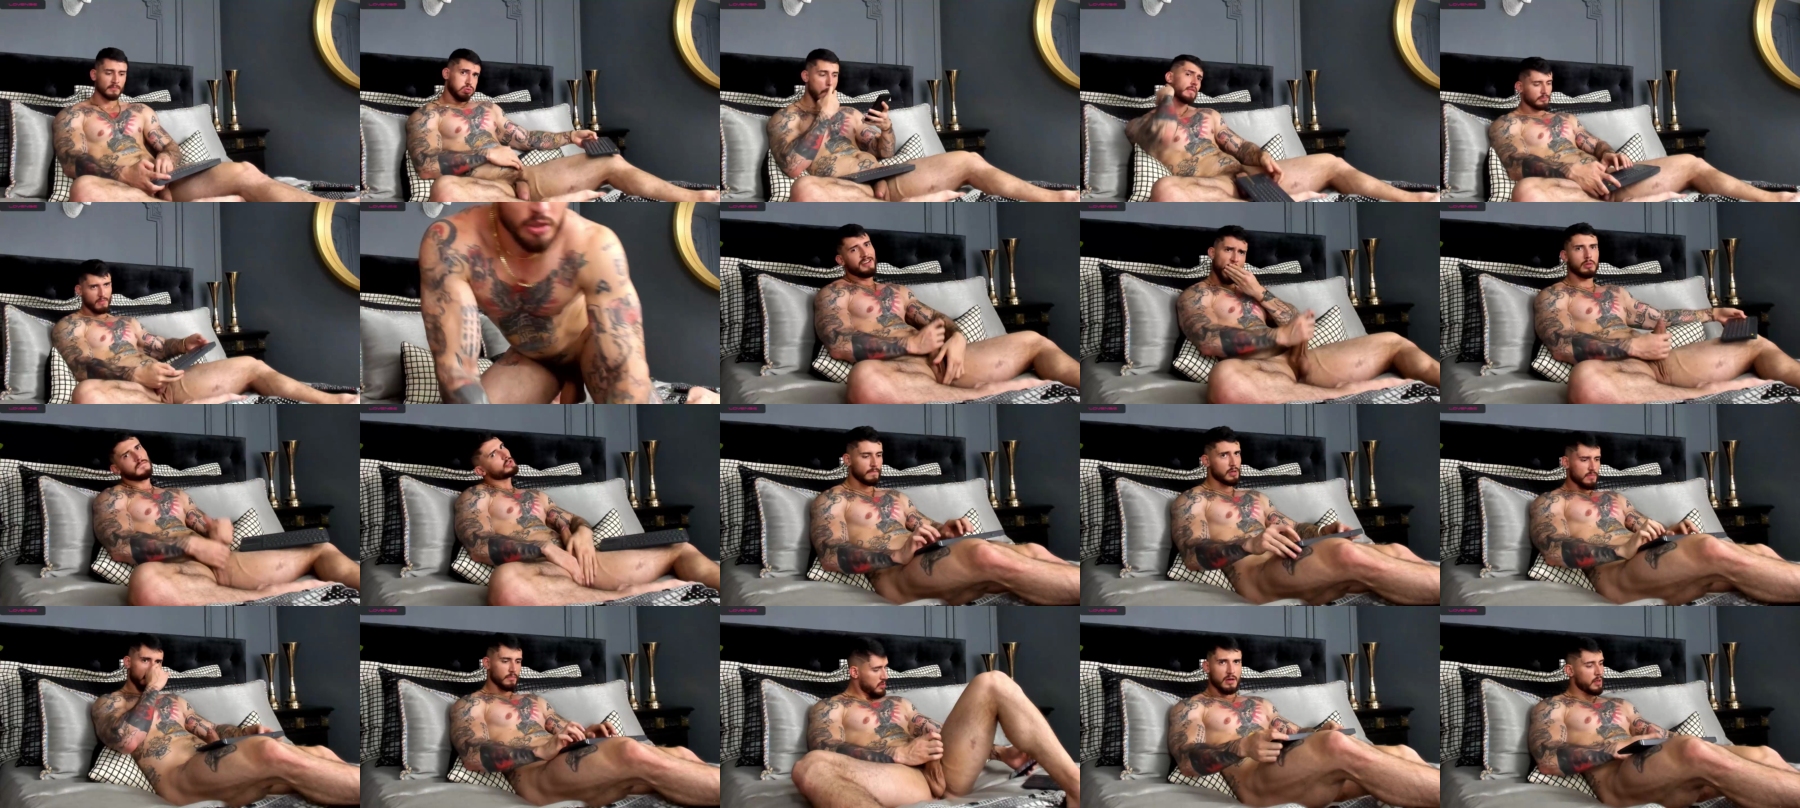 Dimitri_Sullivan  11-12-2021 Male Topless